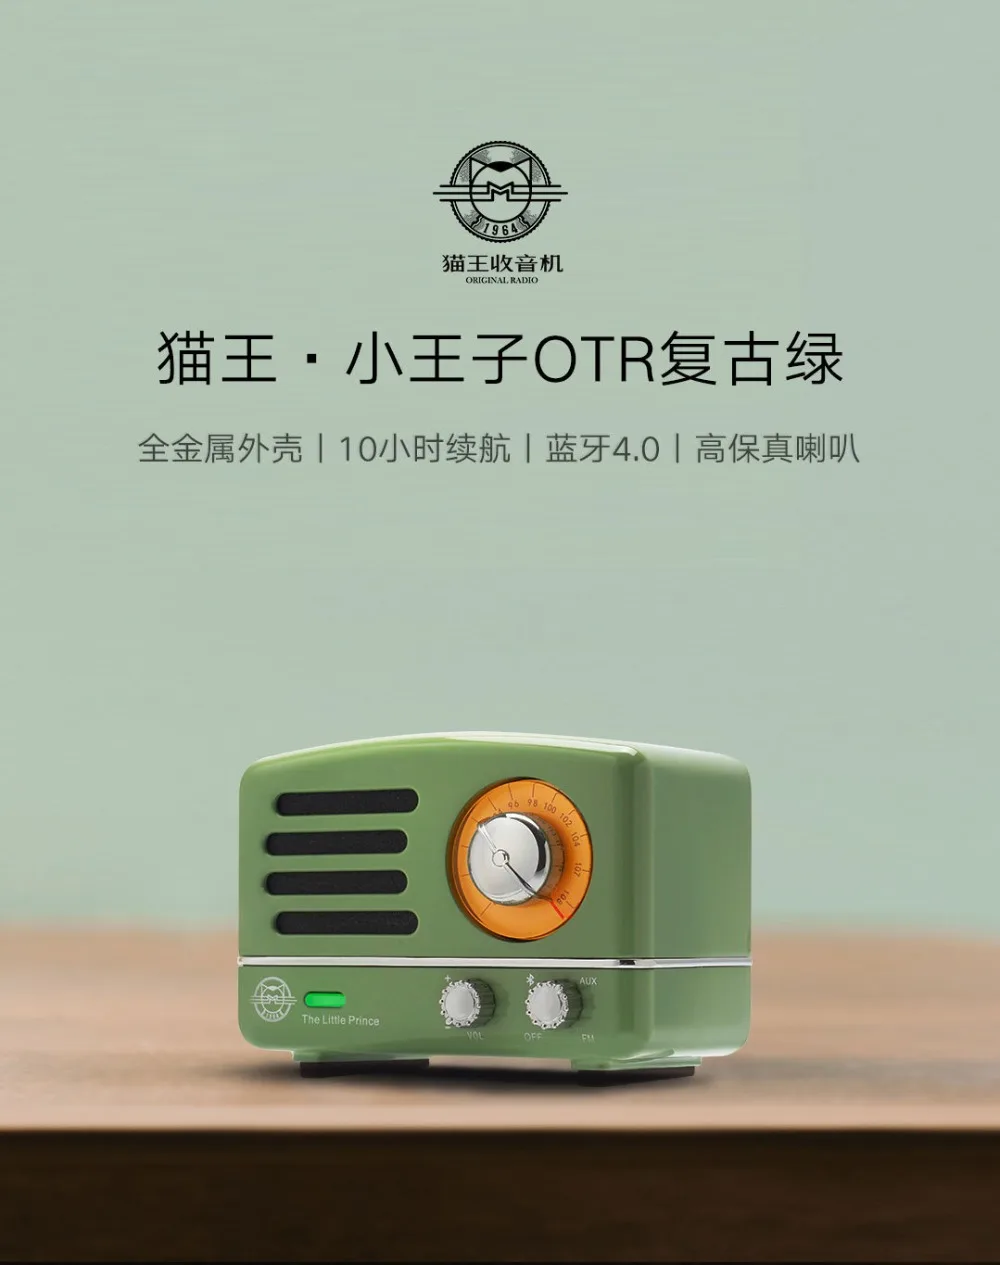 Xiaomi Cat король OTR Bluetooth радио динамик Маленький принц хорошее качество звука голоса мини Портативный Mp3 музыкальный плеер подарок на день